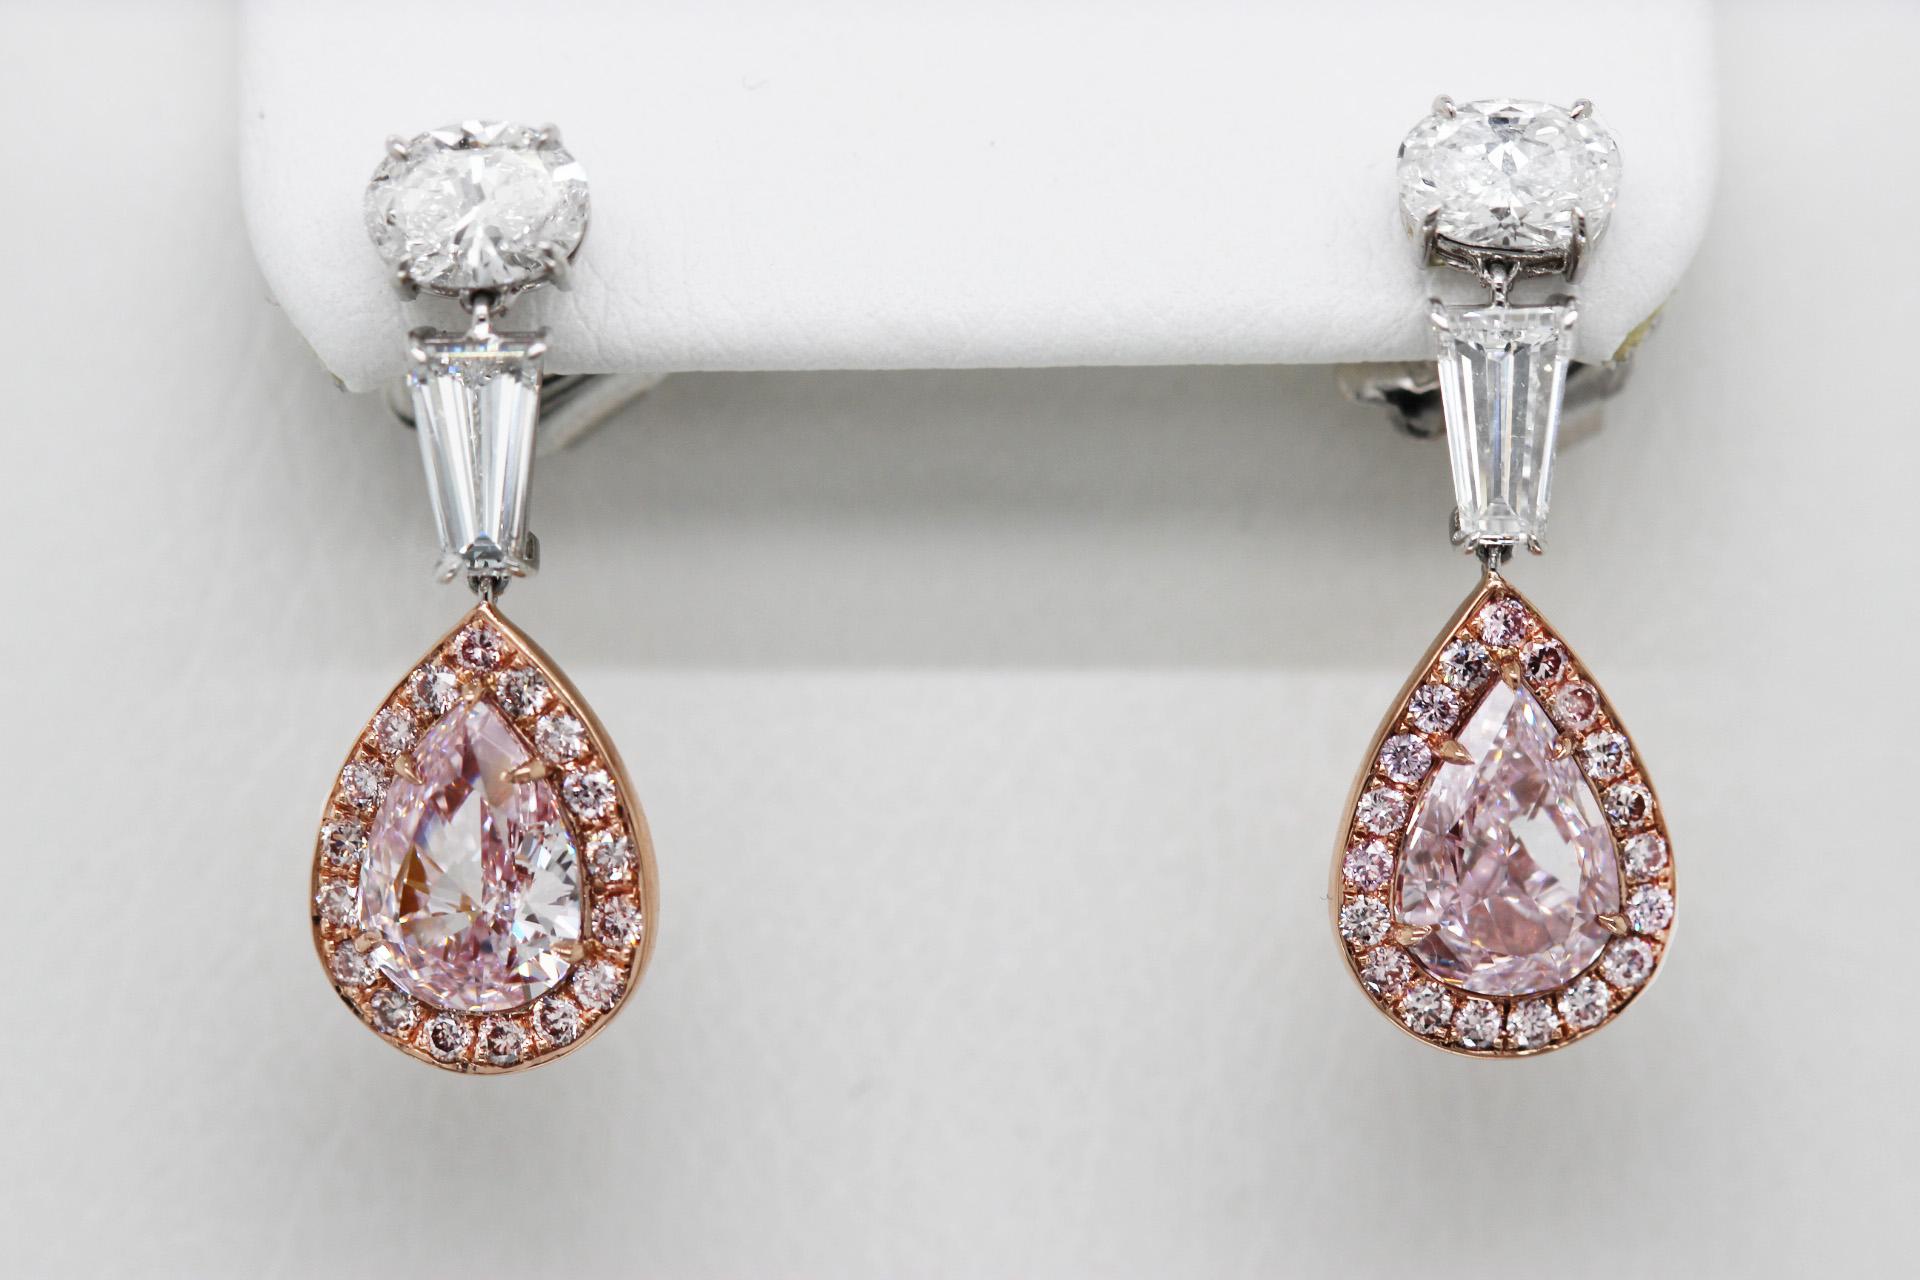 Ein Paar Ohrringe mit rosa Diamanten von Scarselli, mit einem Gesamtkaratgewicht von 5,48. Das Paar ist in 18 Karat Roségold und Platin gefasst und verfügt über zwei außergewöhnliche, GIA-zertifizierte Fancy Pink-Diamanten in der Mitte.

Der obere